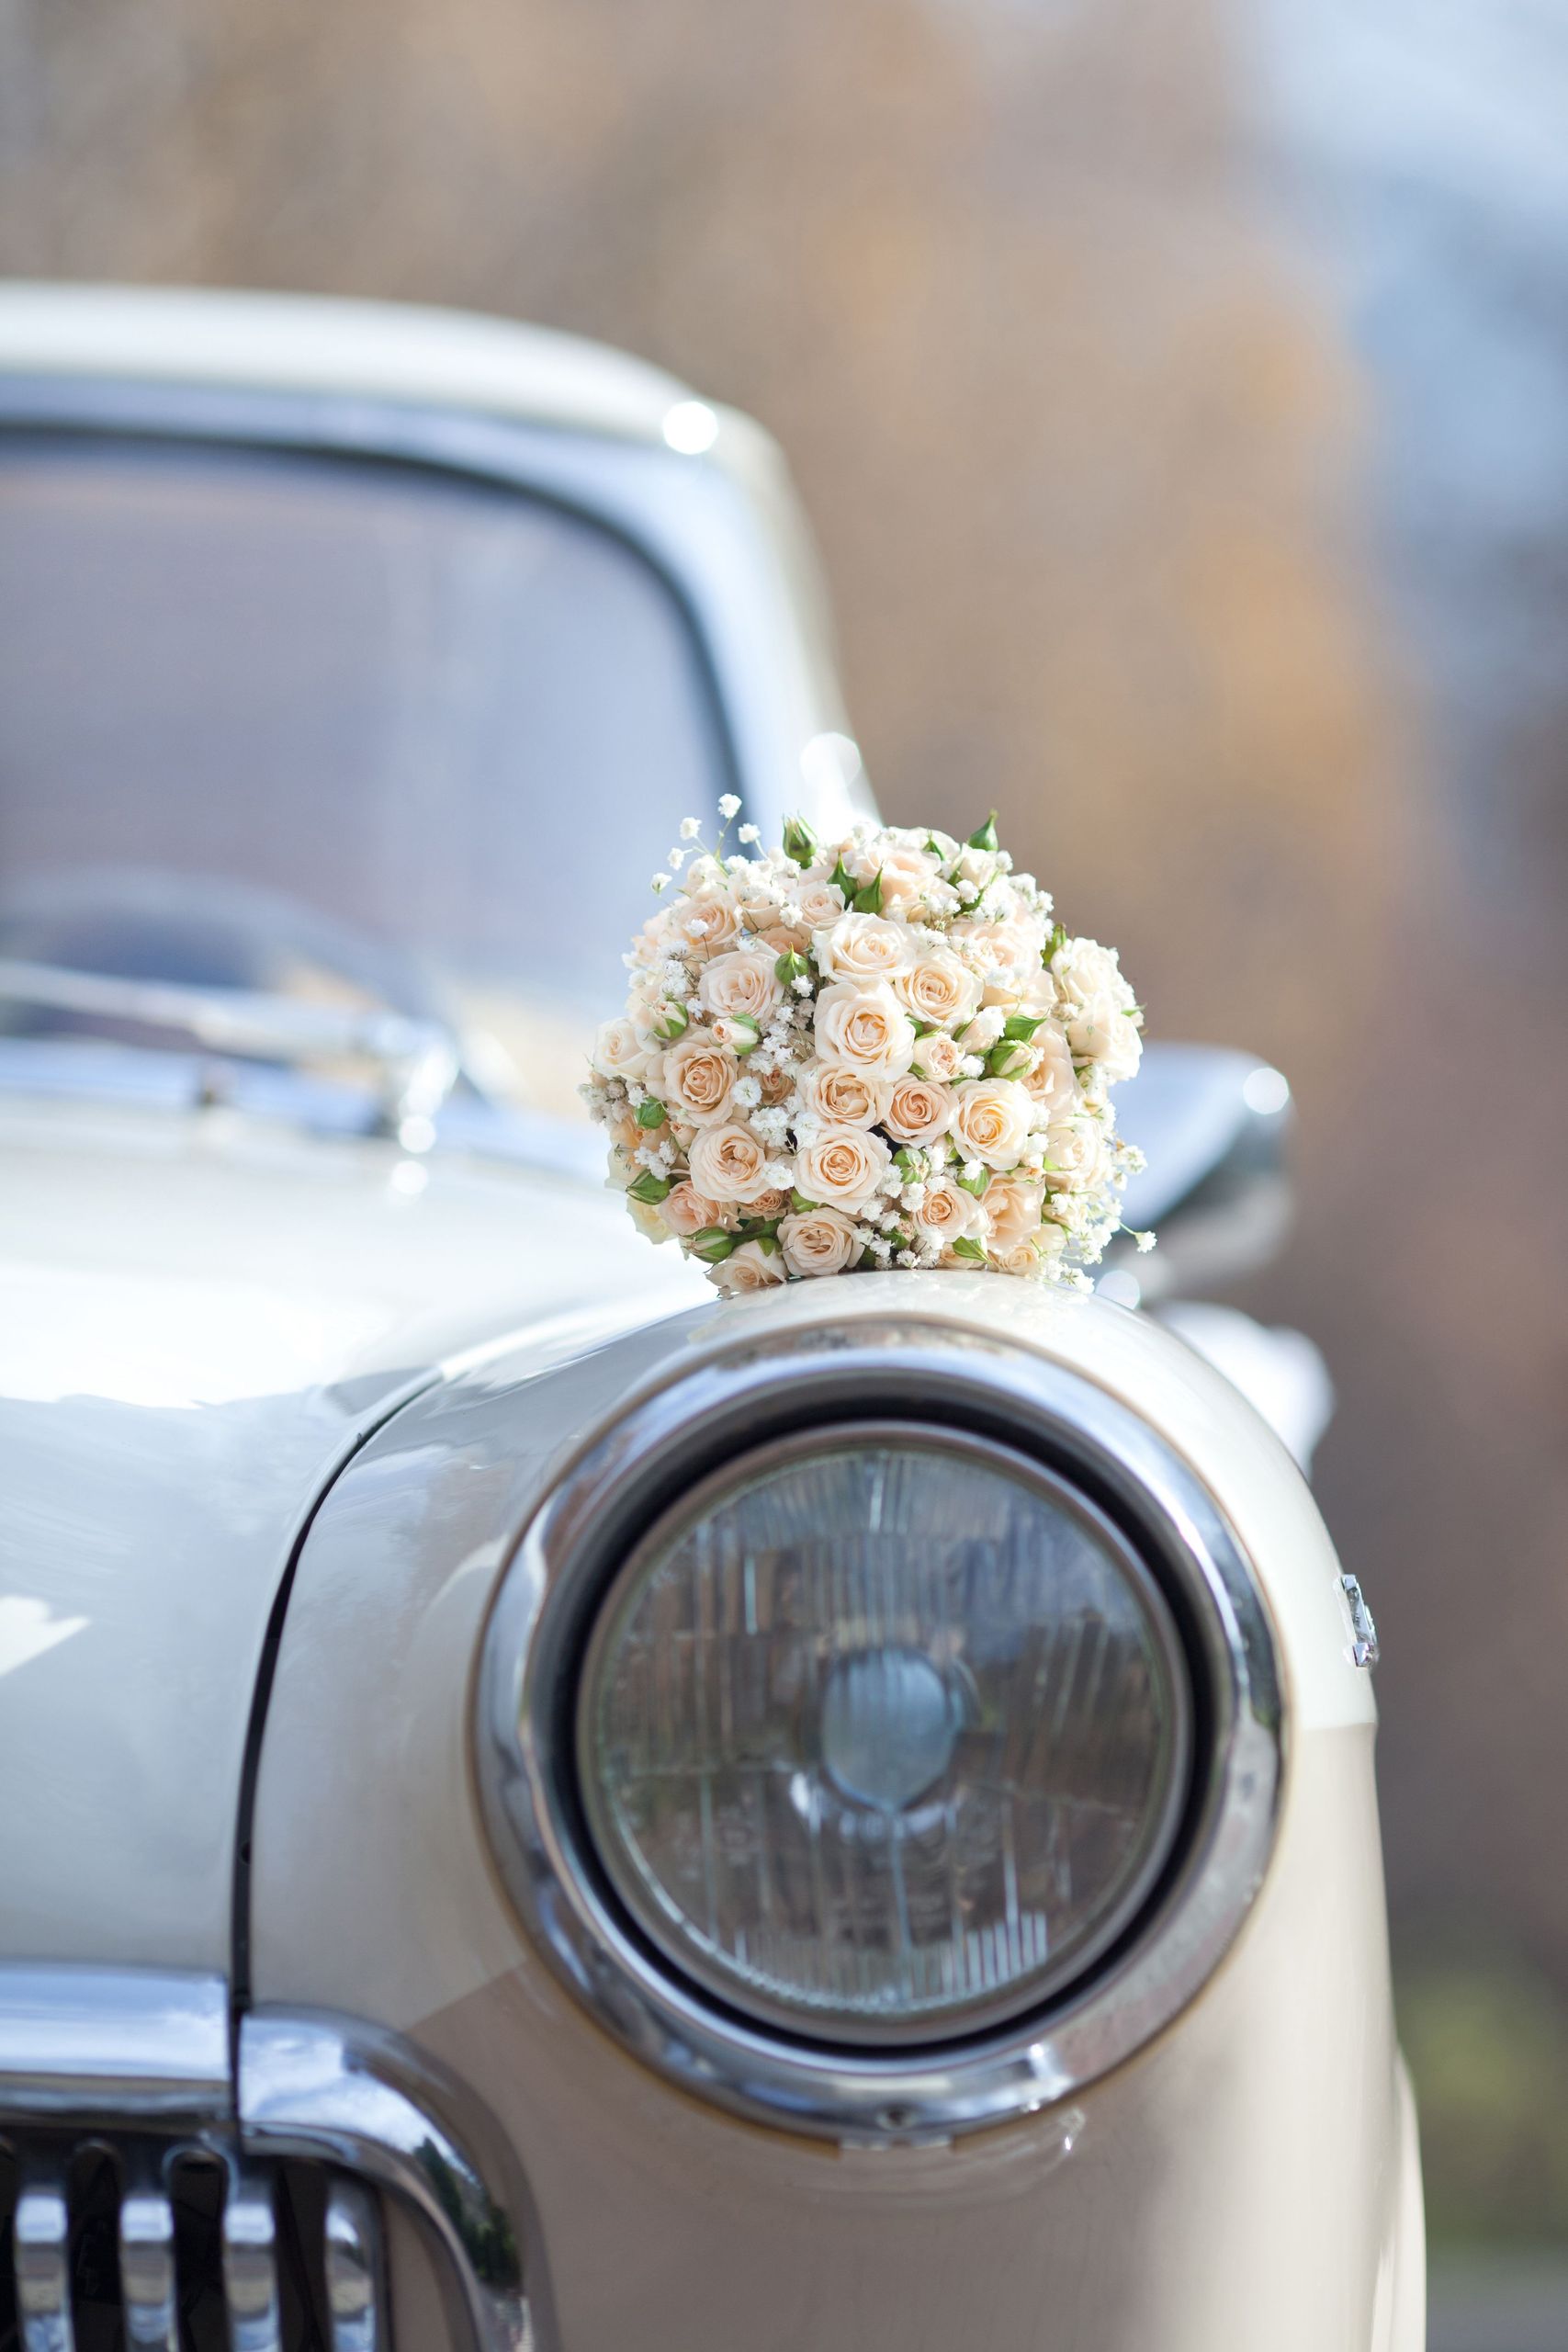 SHR_Weddings-Bouquet on a vintage car_shutterstock_160173737.jpg